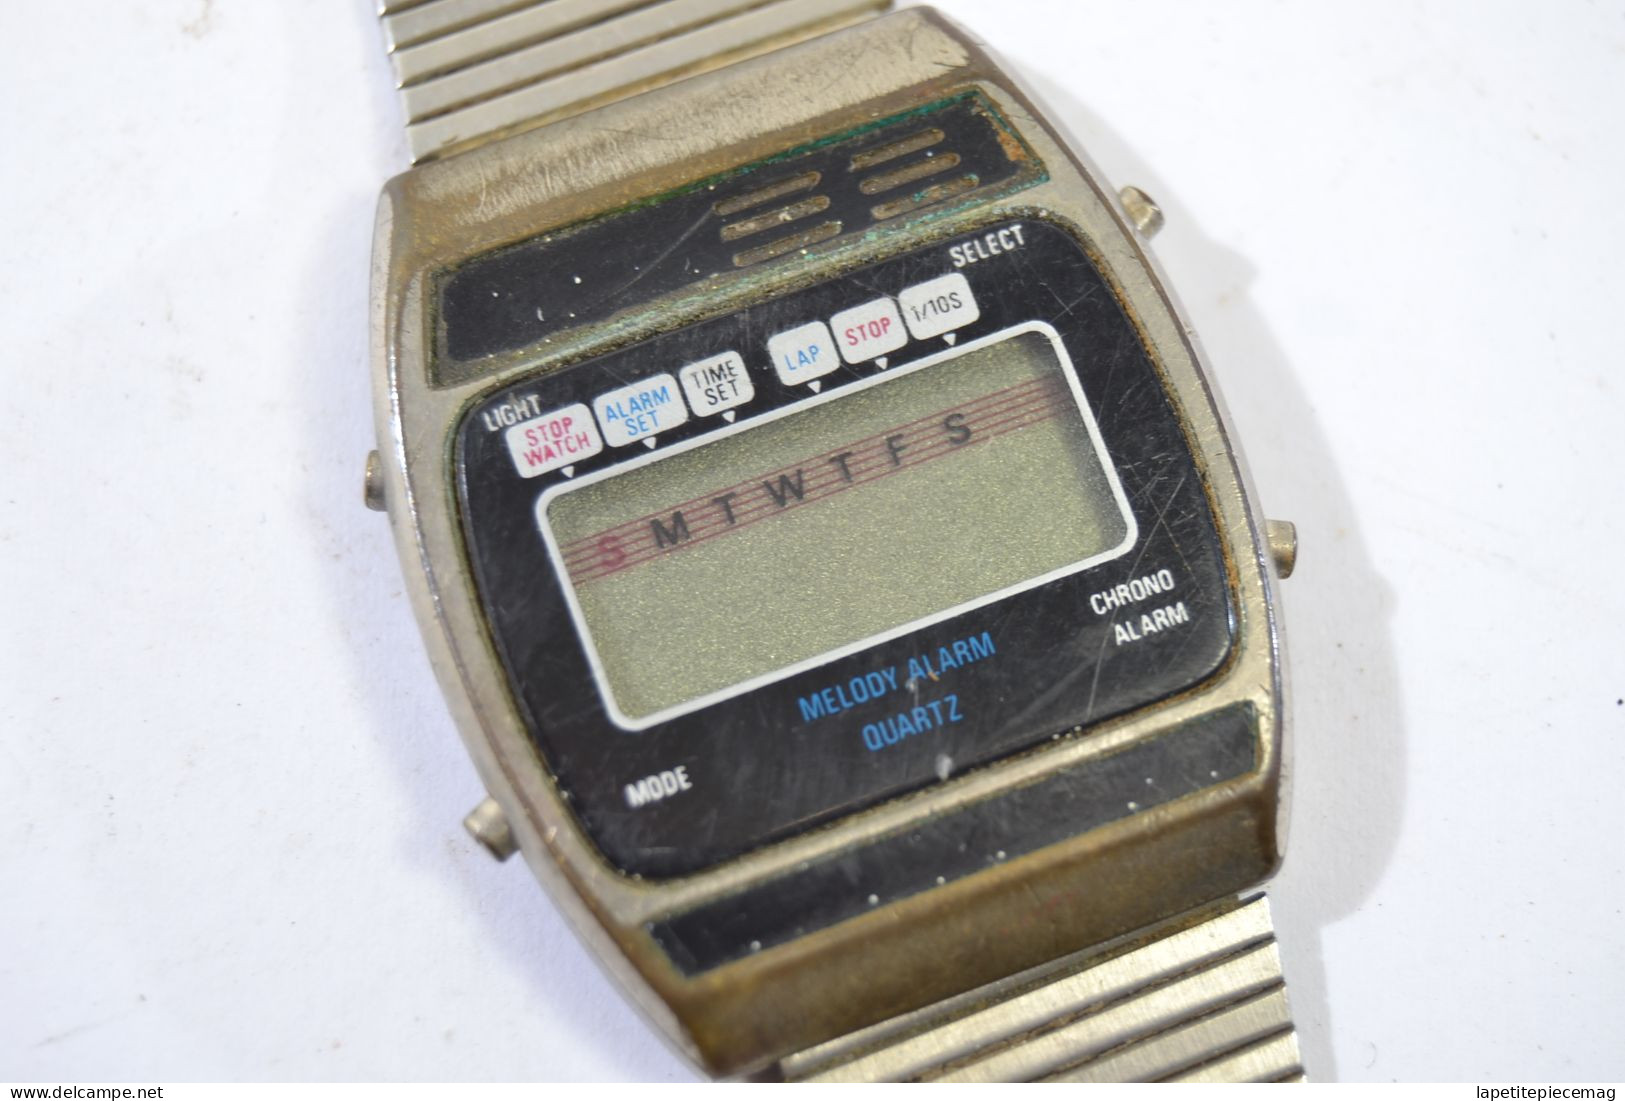 Ancienne montre Melody alarm quartz Hong Kong années 1980.